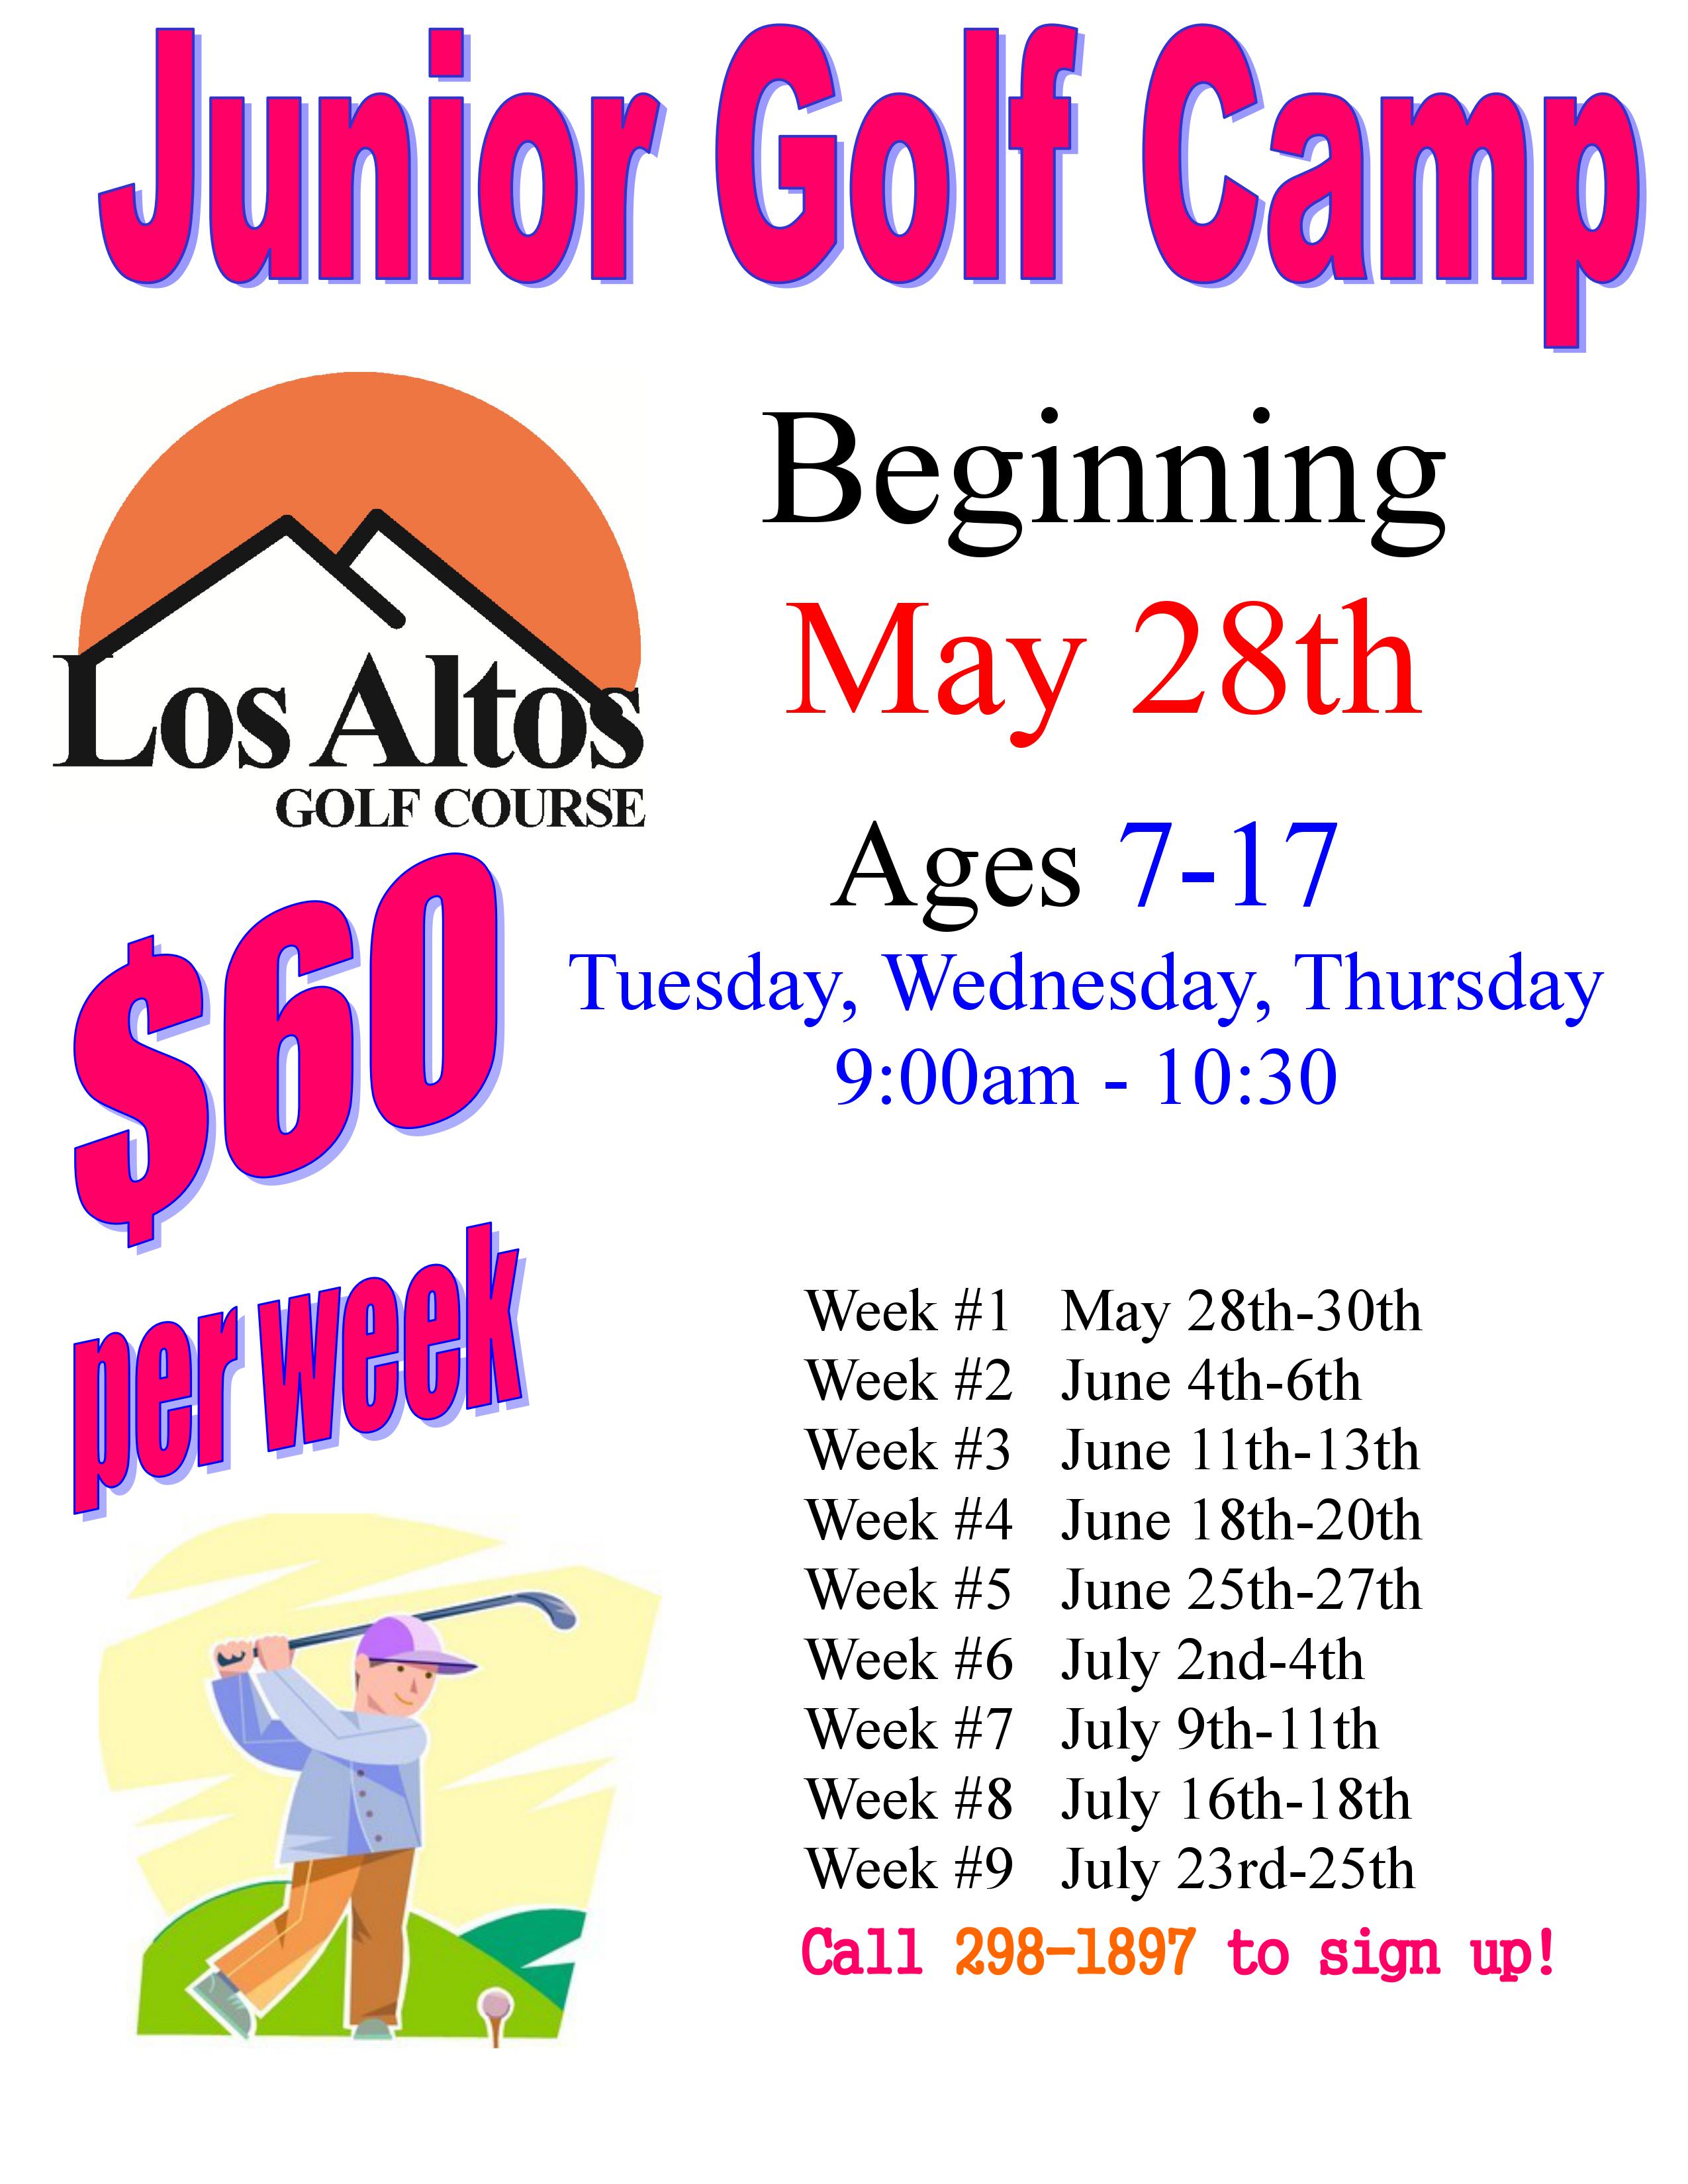 Flyer Los Altos 2019 Junior Golf Camp Schedule